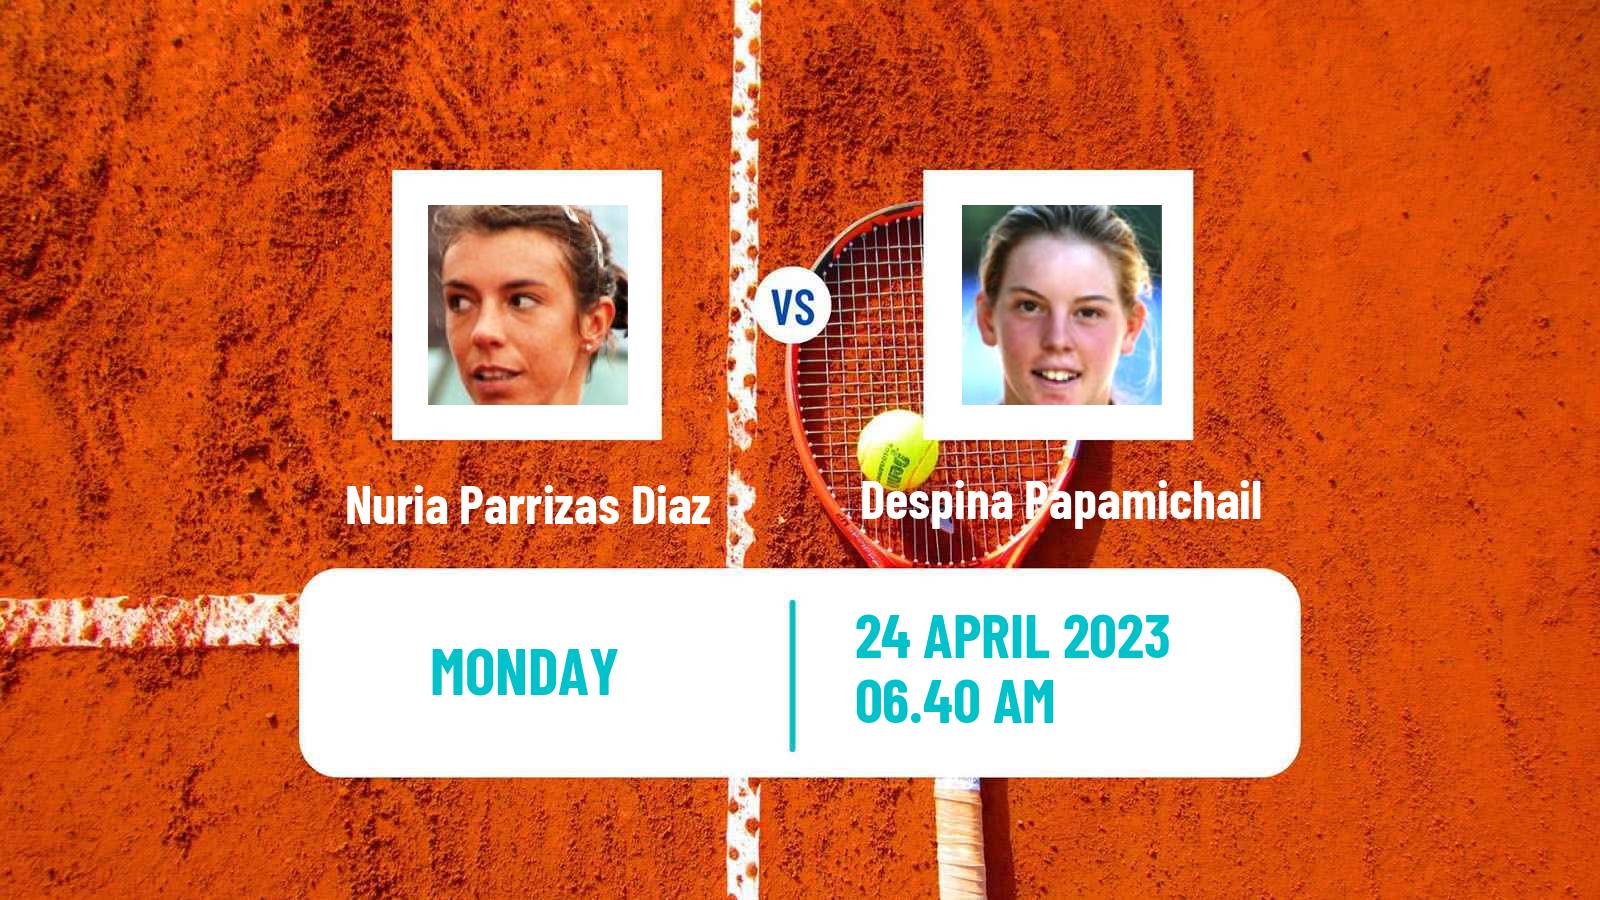 Tennis WTA Madrid Nuria Parrizas Diaz - Despina Papamichail